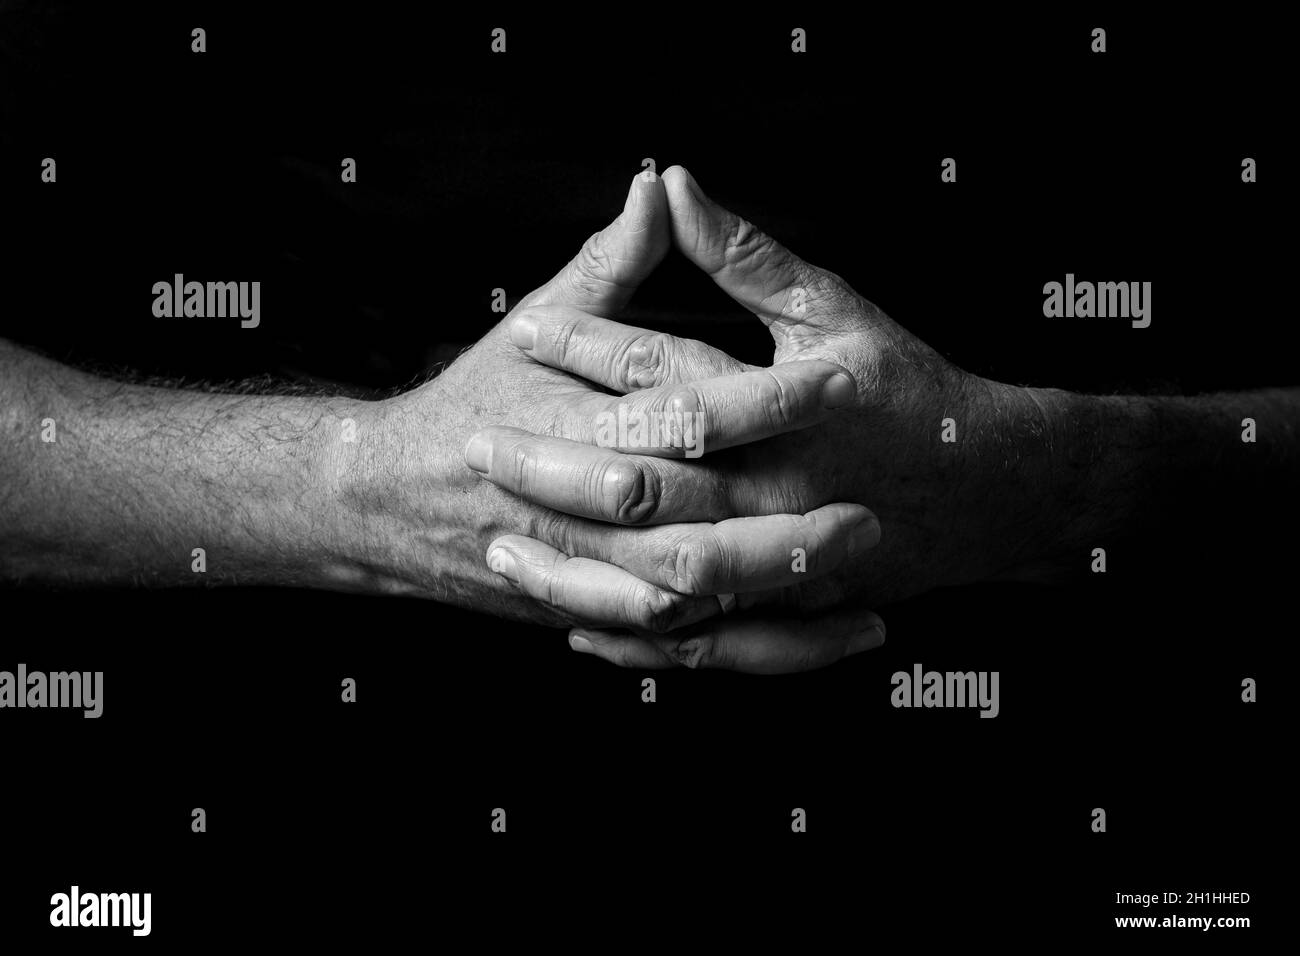 Schwarz-weißes Bild von männlichen Händen, die ausgehalten wurden, mit Daumen zusammengehalten, in Gedanken oder im Gebet, isoliert vor einem schwarzen Hintergrund mit dramatischem Seufzen Stockfoto